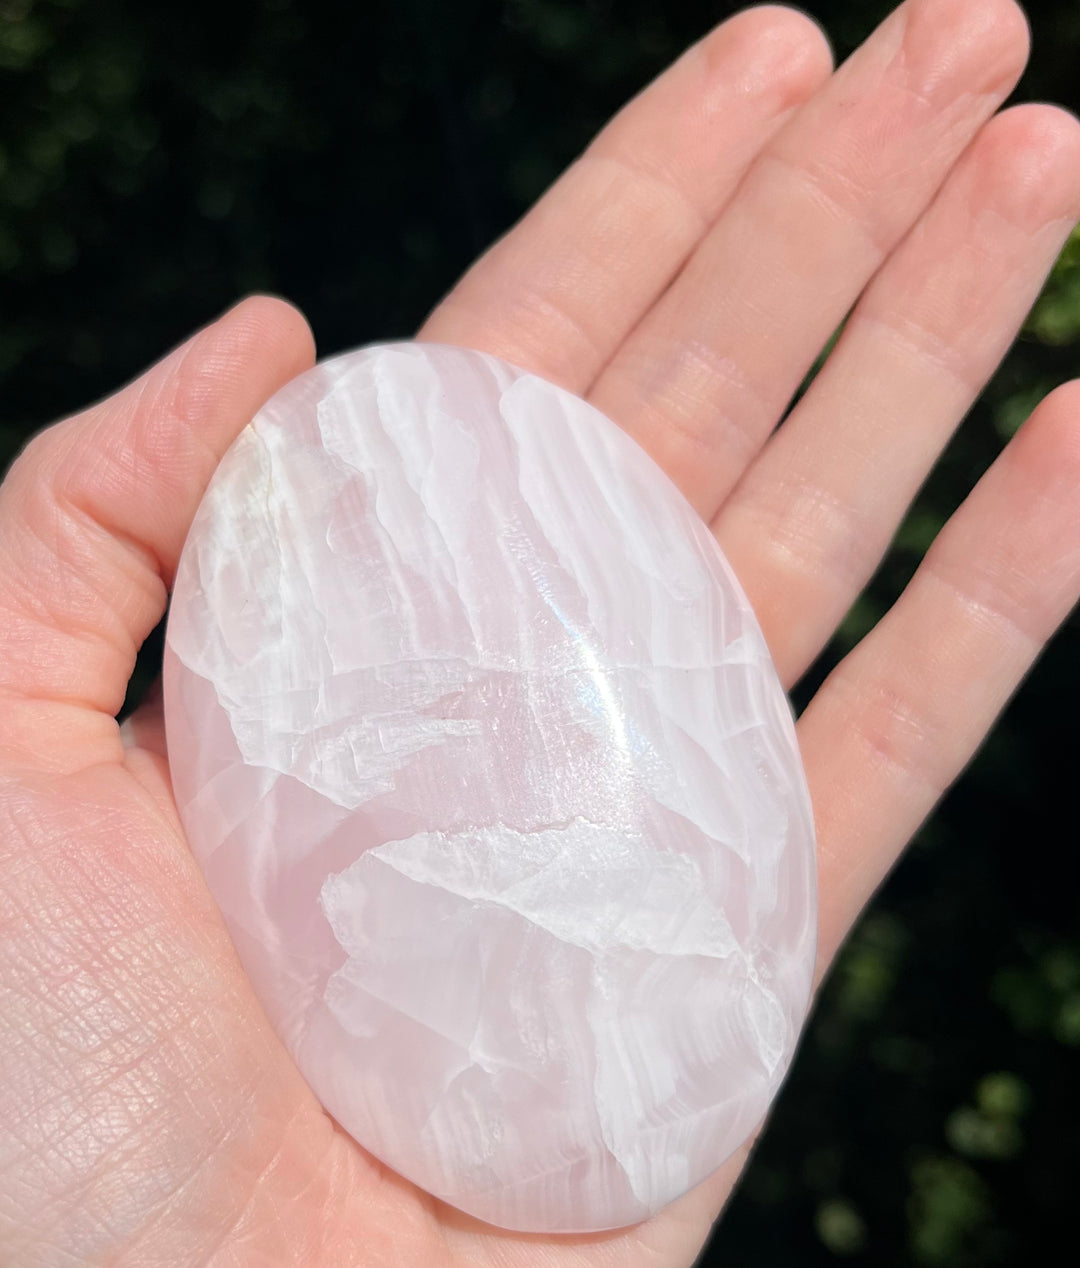 Pink Mangano Calcite Crystals